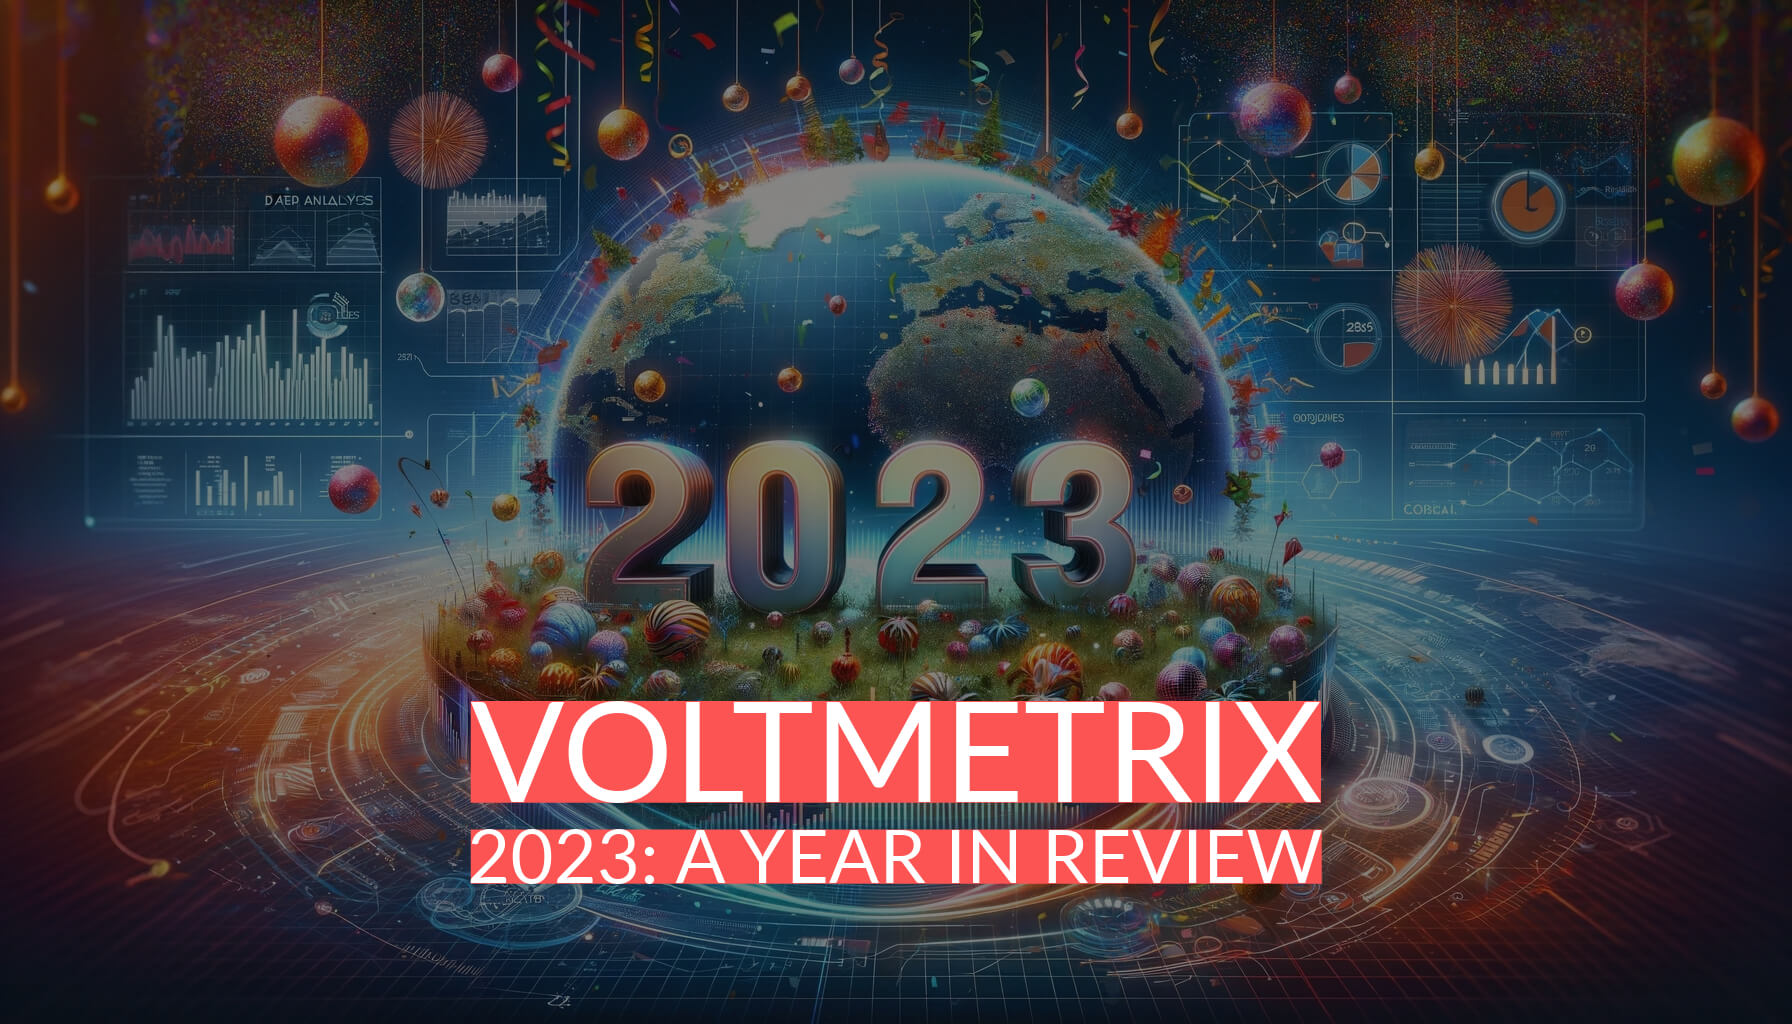 Voltmetrix 2023